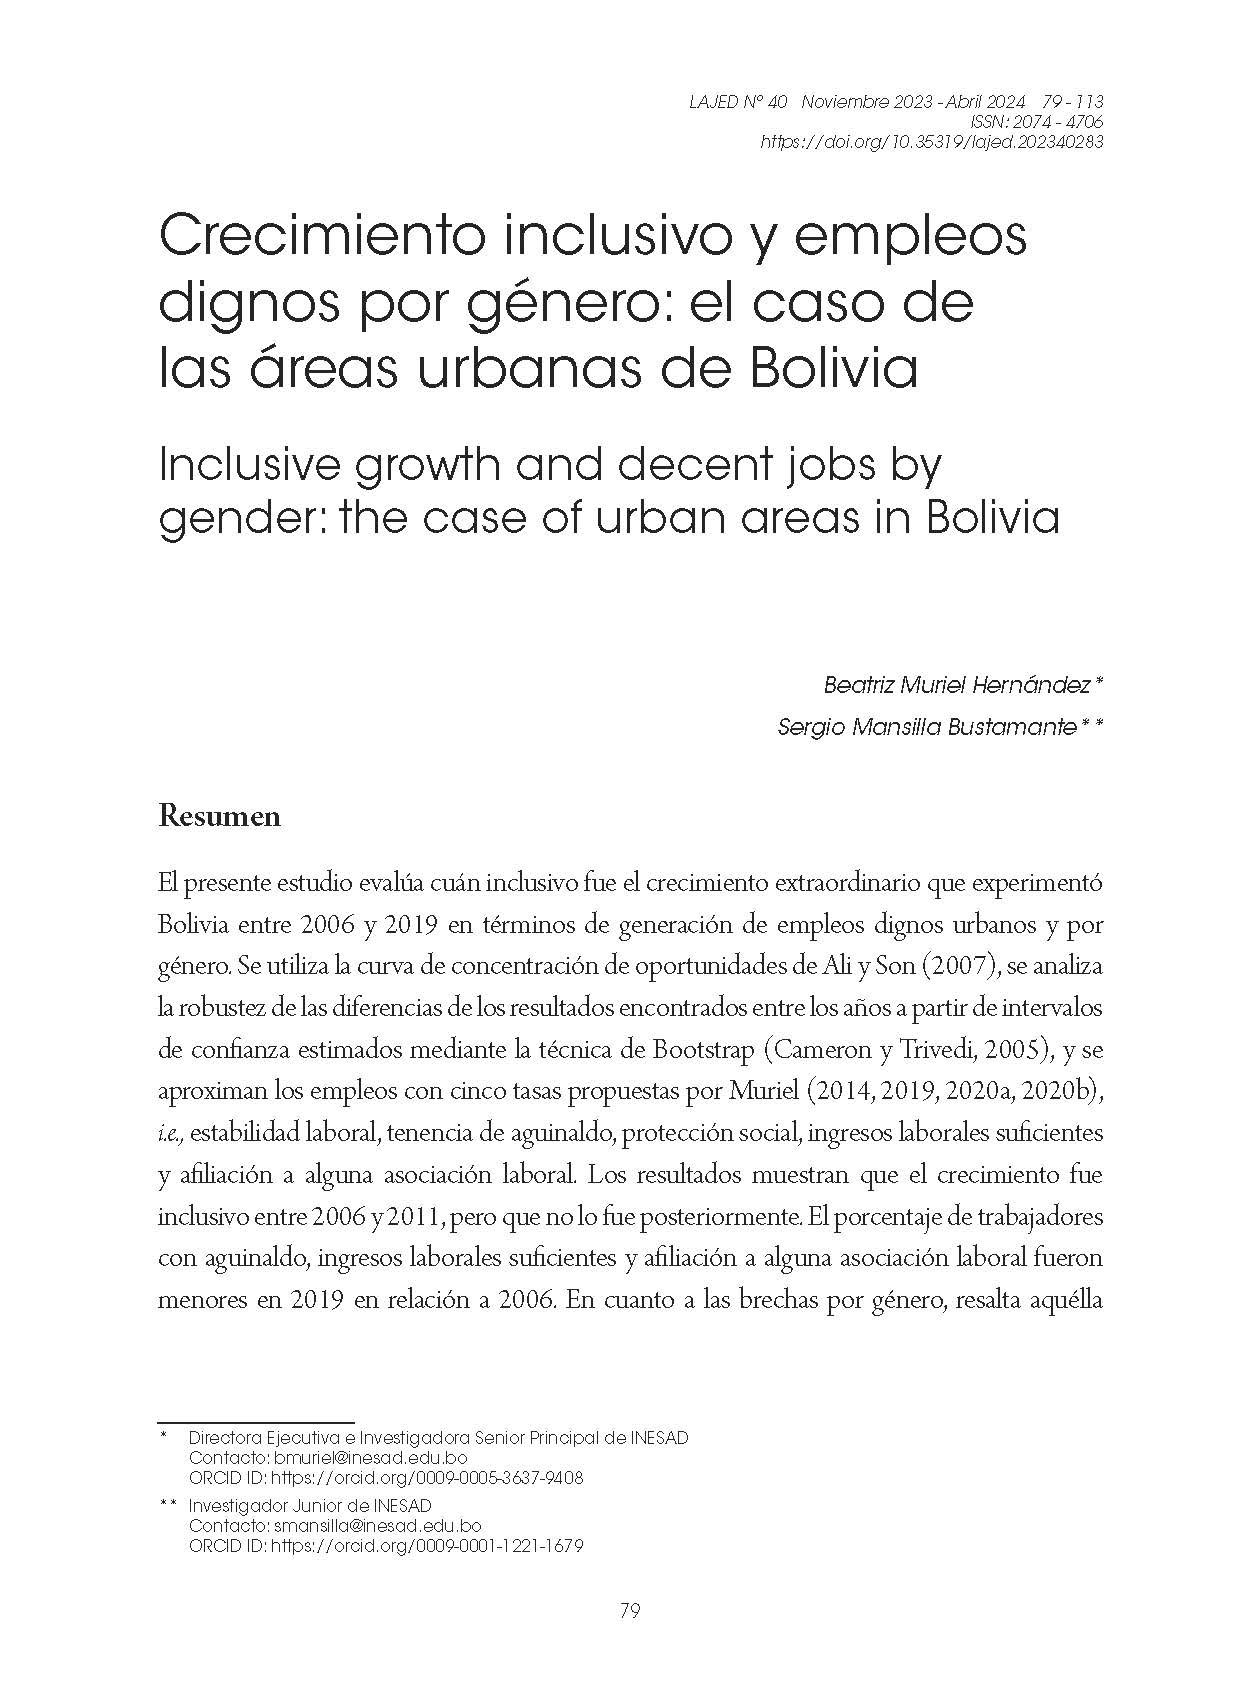 Crecimiento inclusivo y empleos dignos por género: el caso de las áreas urbanas de Bolivia